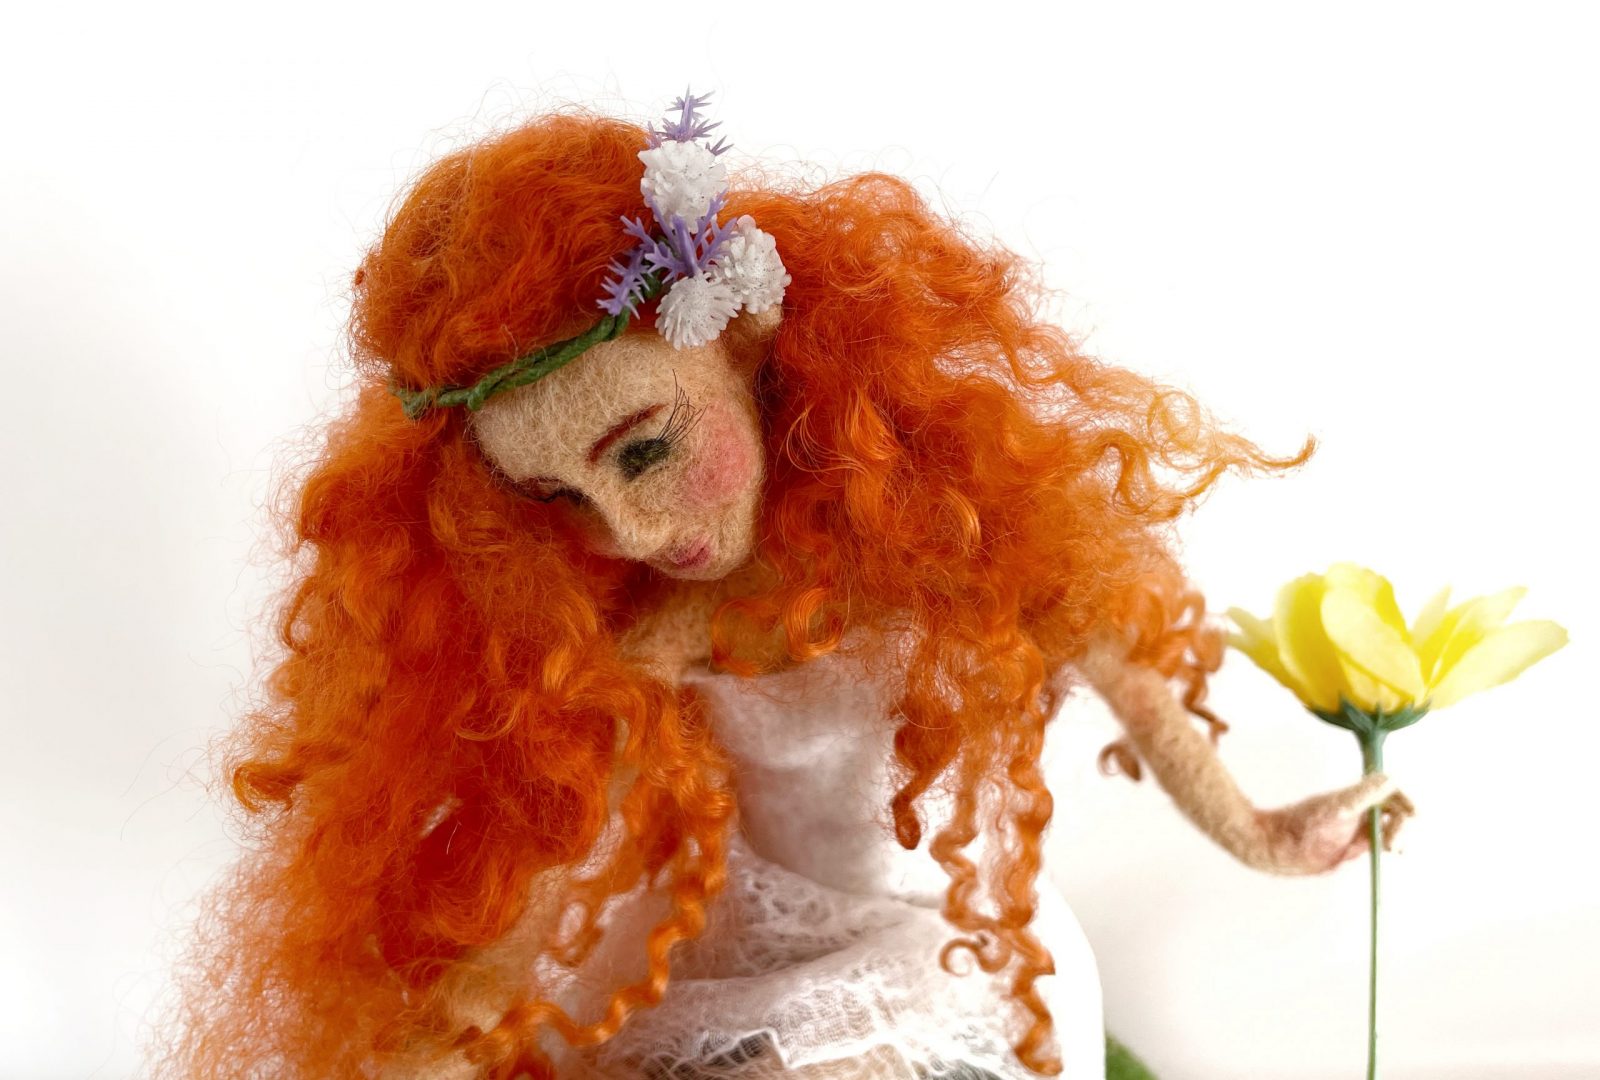 bambola elfa di lana con capelli ricci rossi e corona di fiori tra i capelli, fiore giallo tra le mani